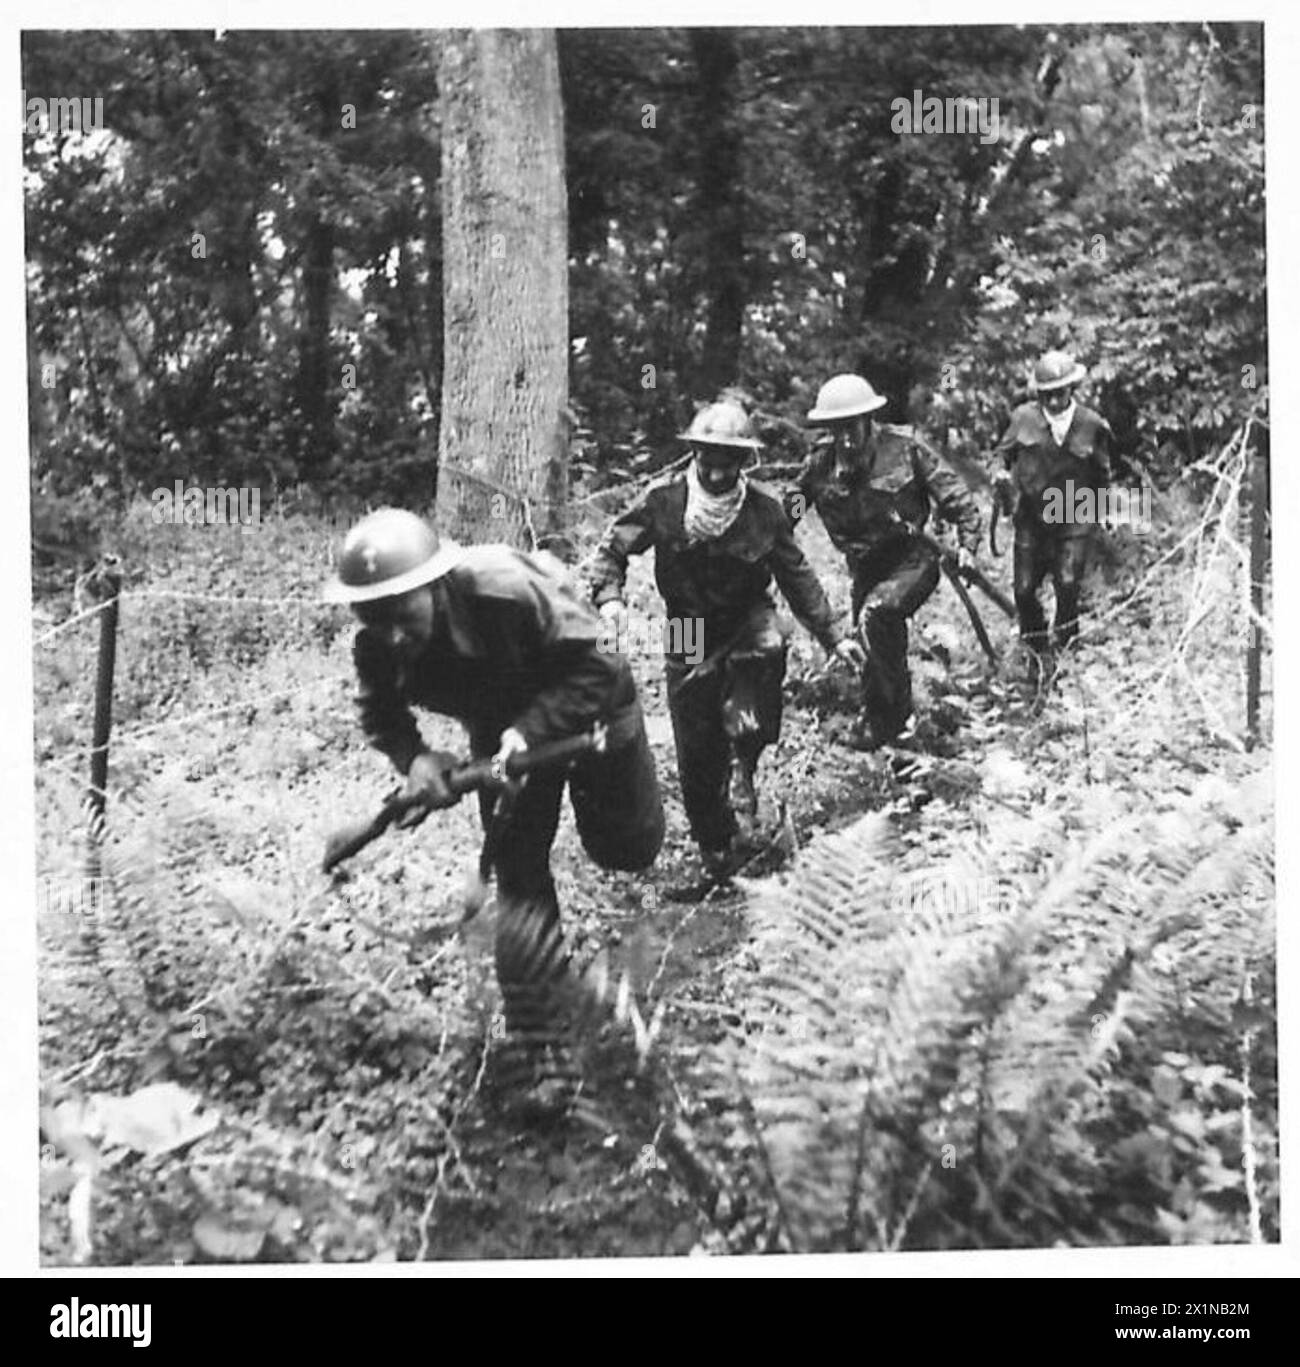 Einen SOLDATEN HÄRTER MACHEN - Kampf um Stacheldrahtfallen und Unterholz, britische Armee Stockfoto